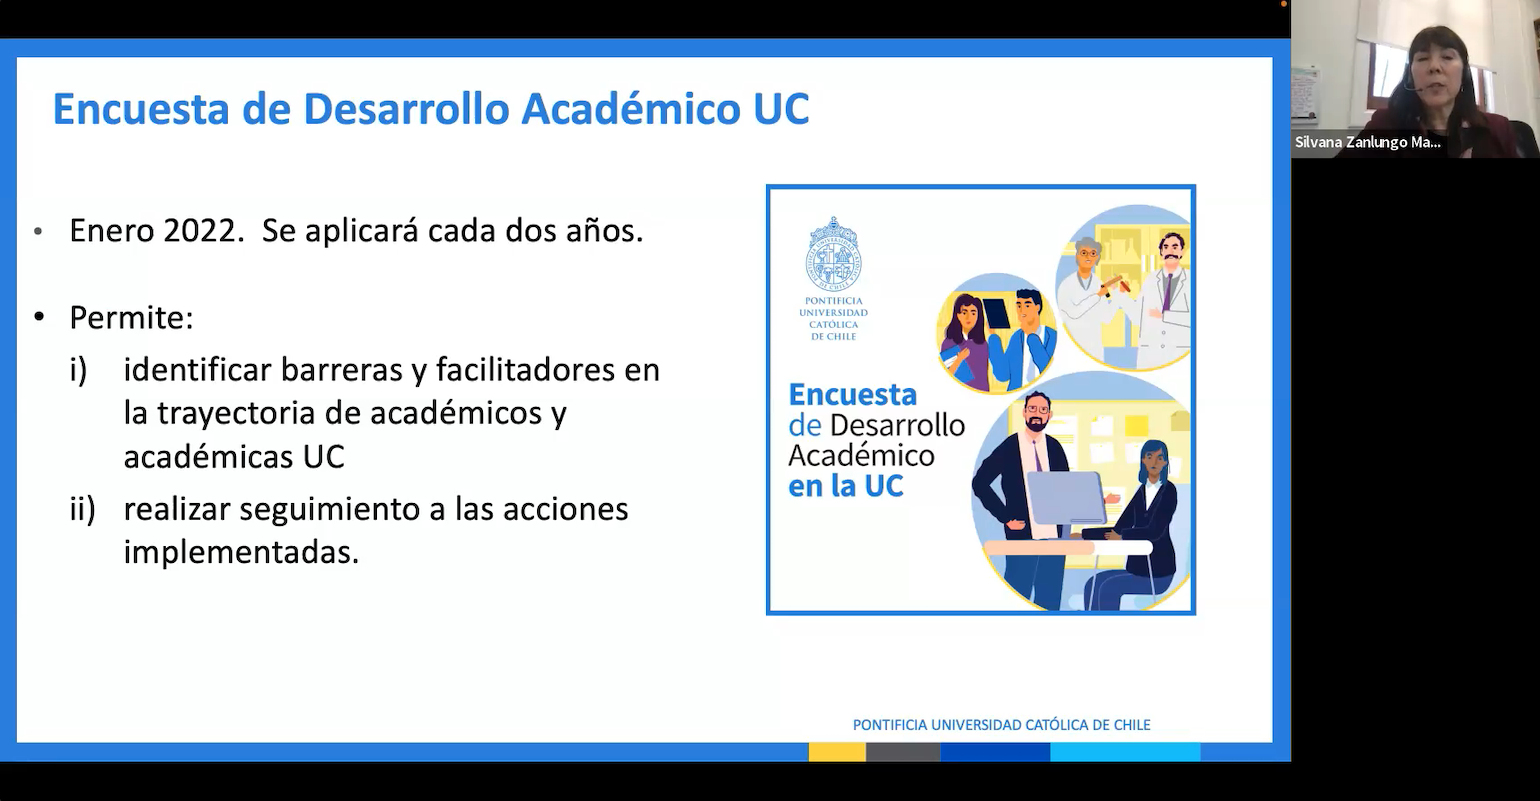 La presentación incluyó las diversas acciones con las que la UC apoya el desarrollo de la carrera académica de sus docentes.